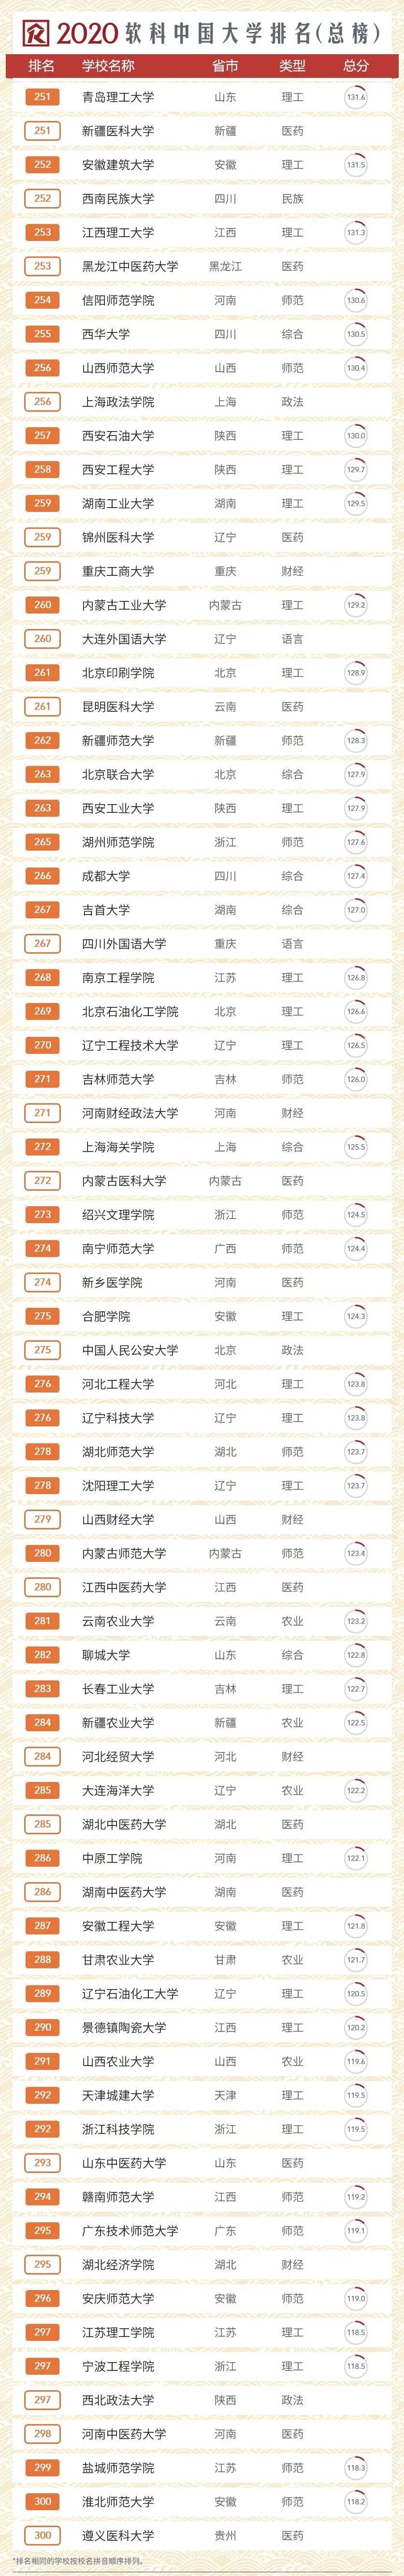 2020中国大学综合排名2020年中国大学综合排名,看看你的母校是否上榜